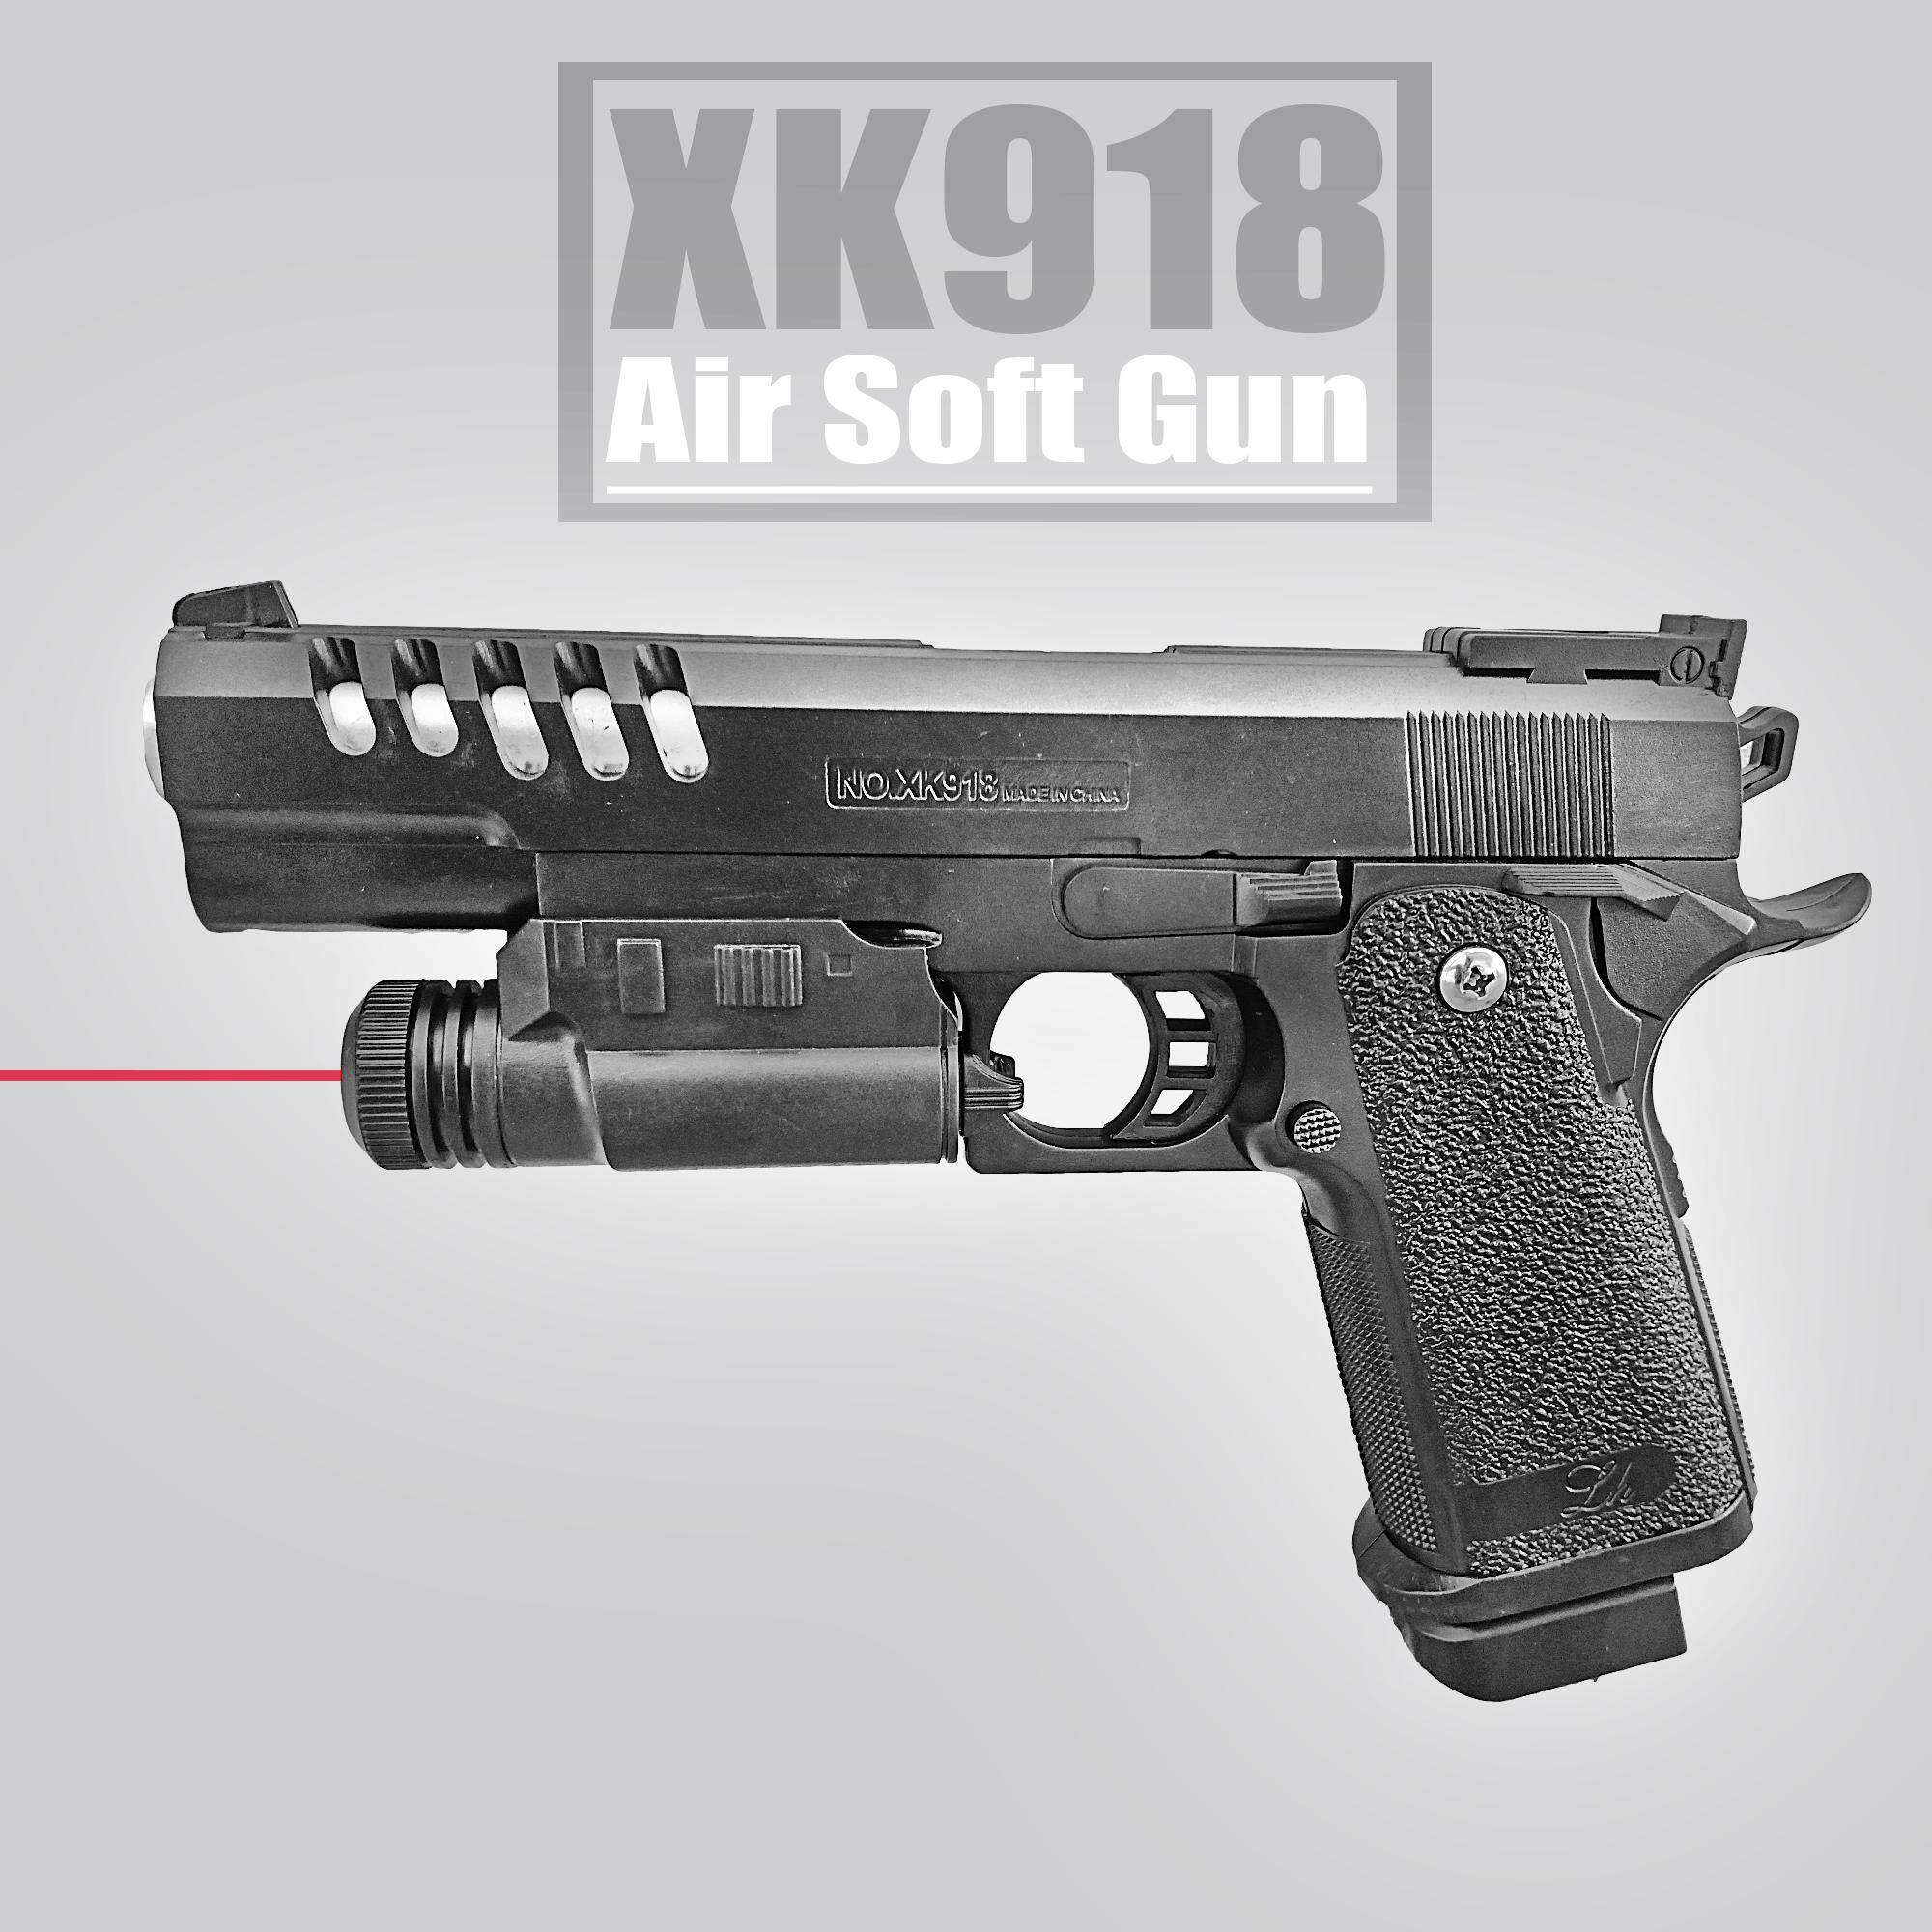 ปืนของเล่น ปืนอัดลม สีดำ XK918 มีแสงเลเซอร์ แถม100กระสุน